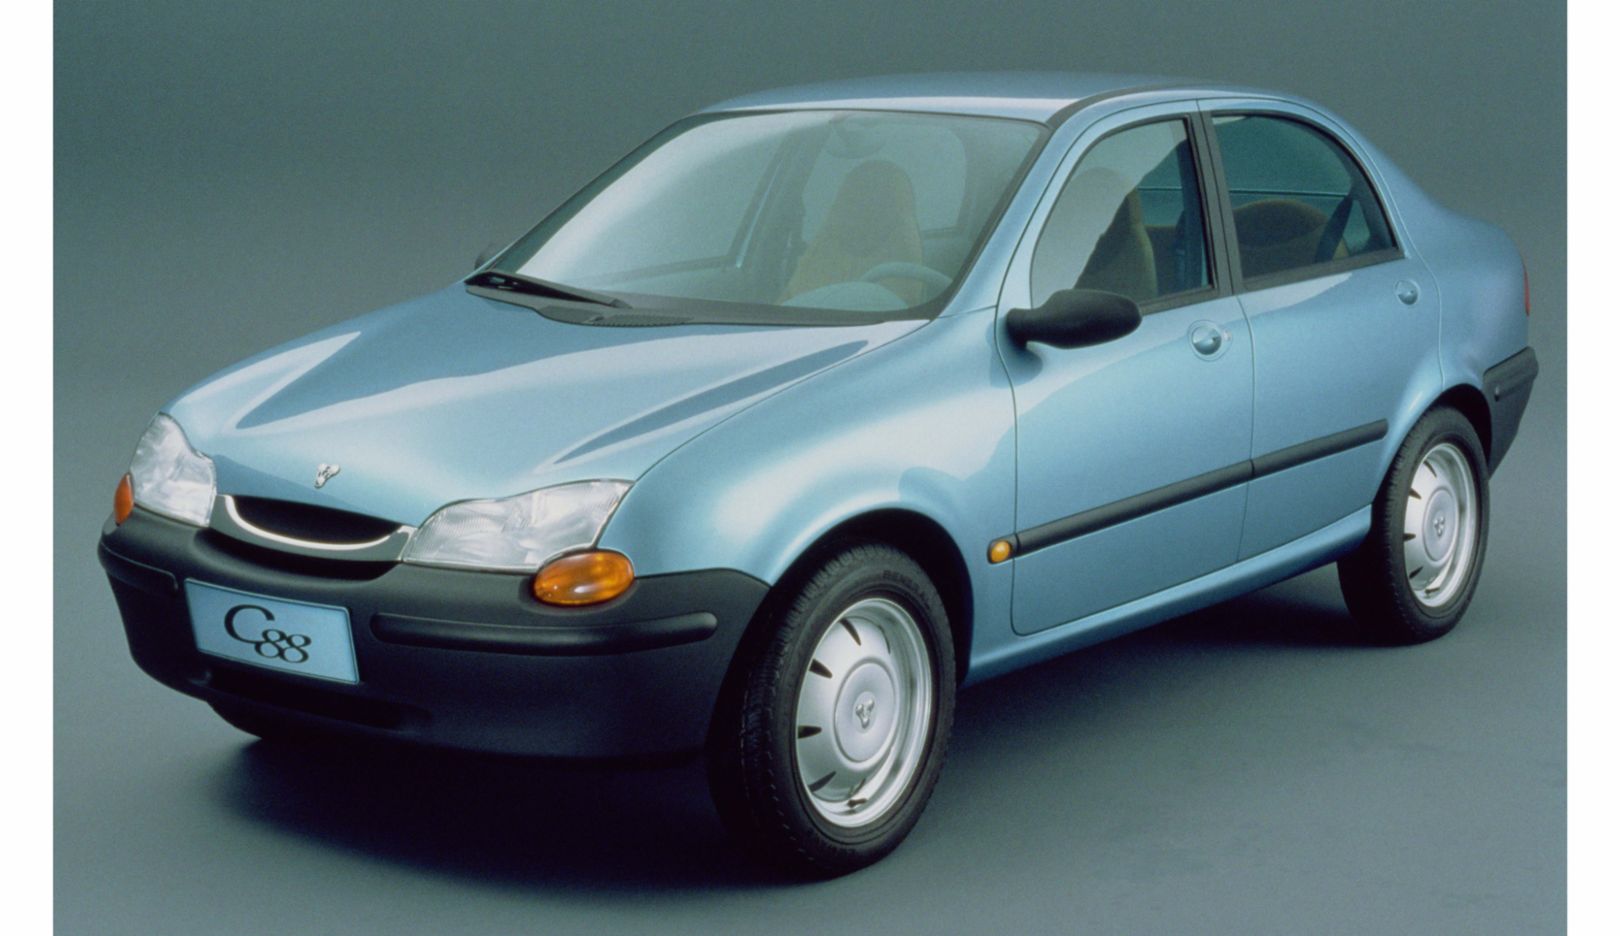 1994 – Fahrzeugstudie für den chinesischen Markt: Das Konzeptfahrzeug C88 wird in Peking in drei Versionen vorgestellt: Als preisgünstige zweitürige Variante, als Standardmodell und als viertürige Luxusversion mit Stufenheck. Entwicklungsziele waren einfache Fertigungsmethoden, hoher Qualitätsstandard sowie hohe Fahrzeugsicherheit.